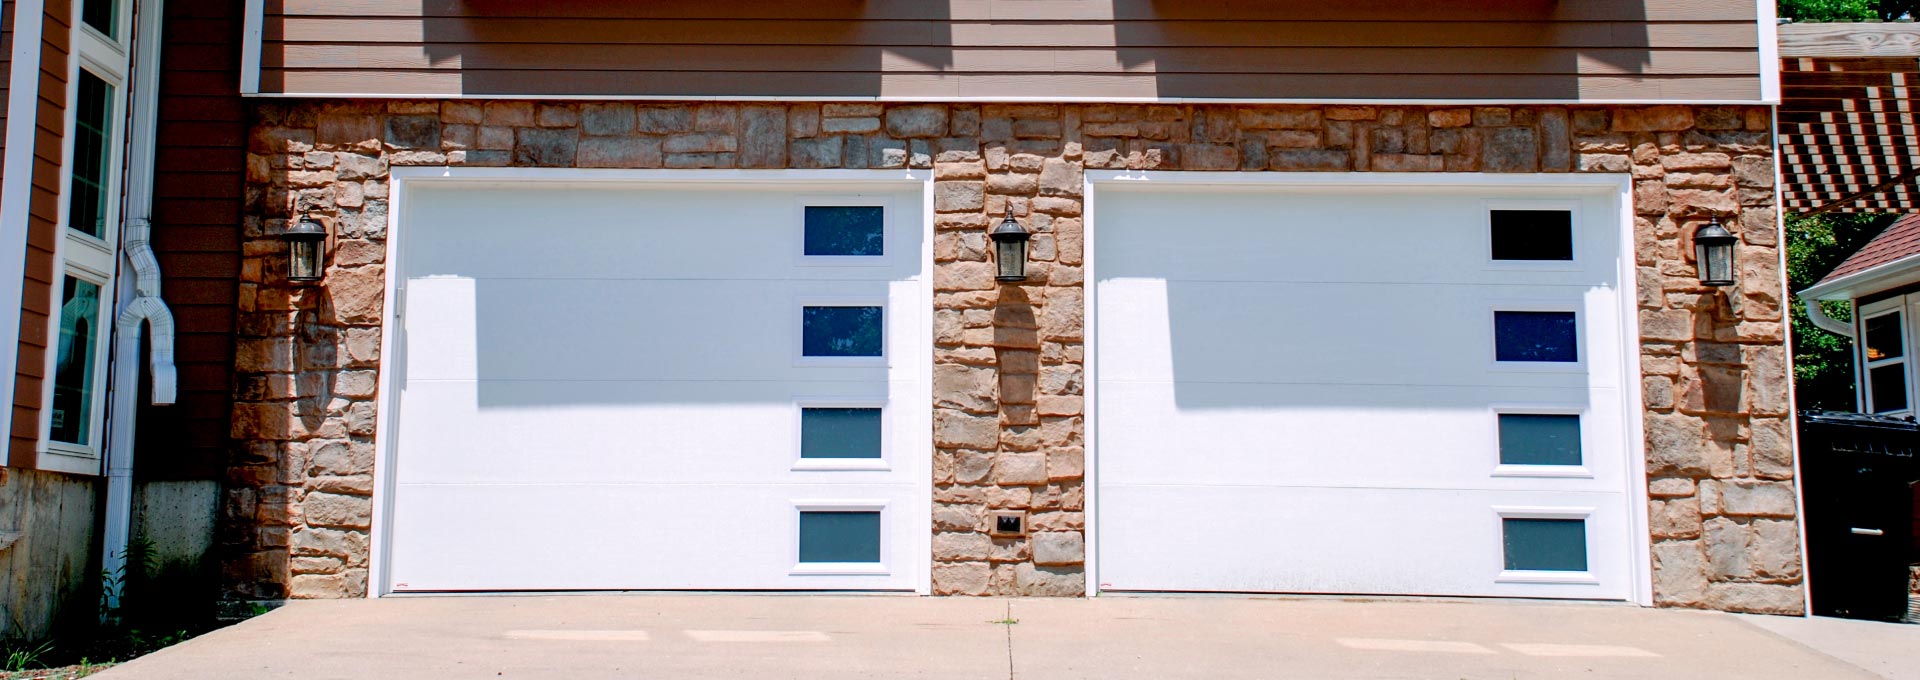 Premium insulated steel garage doors.